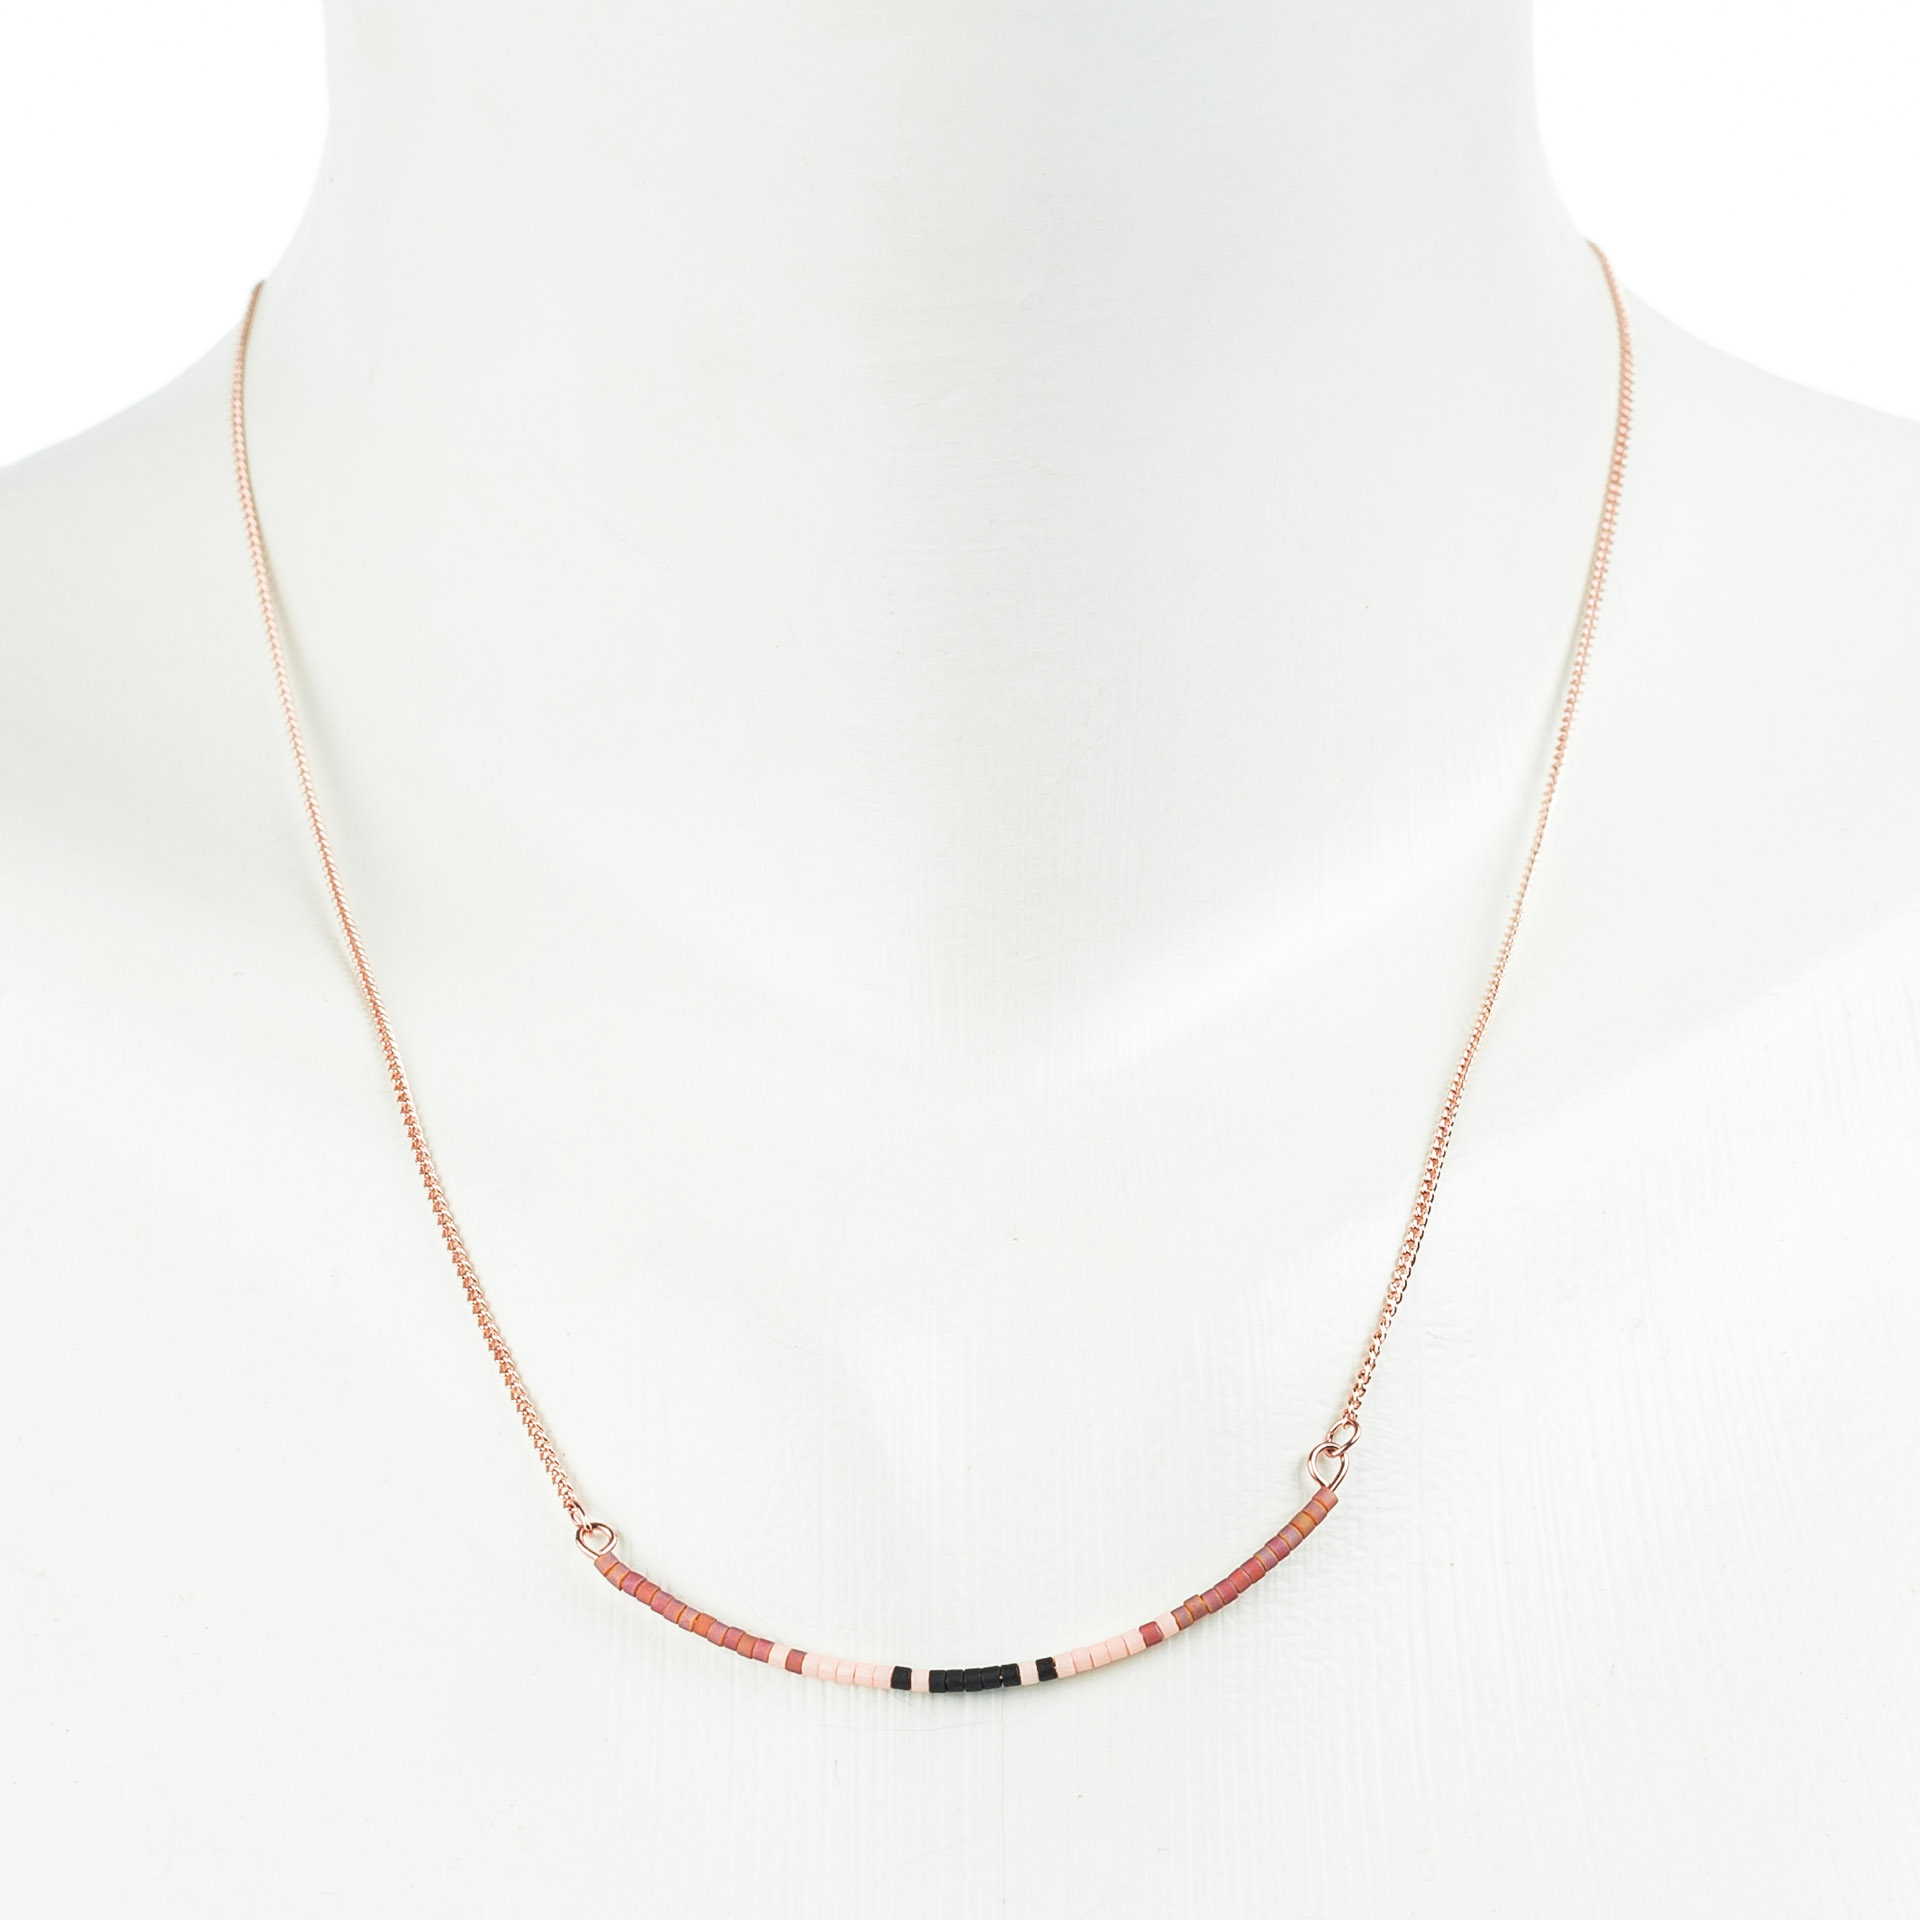 "Petite Beads" feine kurze Metallkette mit japan. Rocaillesperlen, braun-schwarz, rosé vergoldet